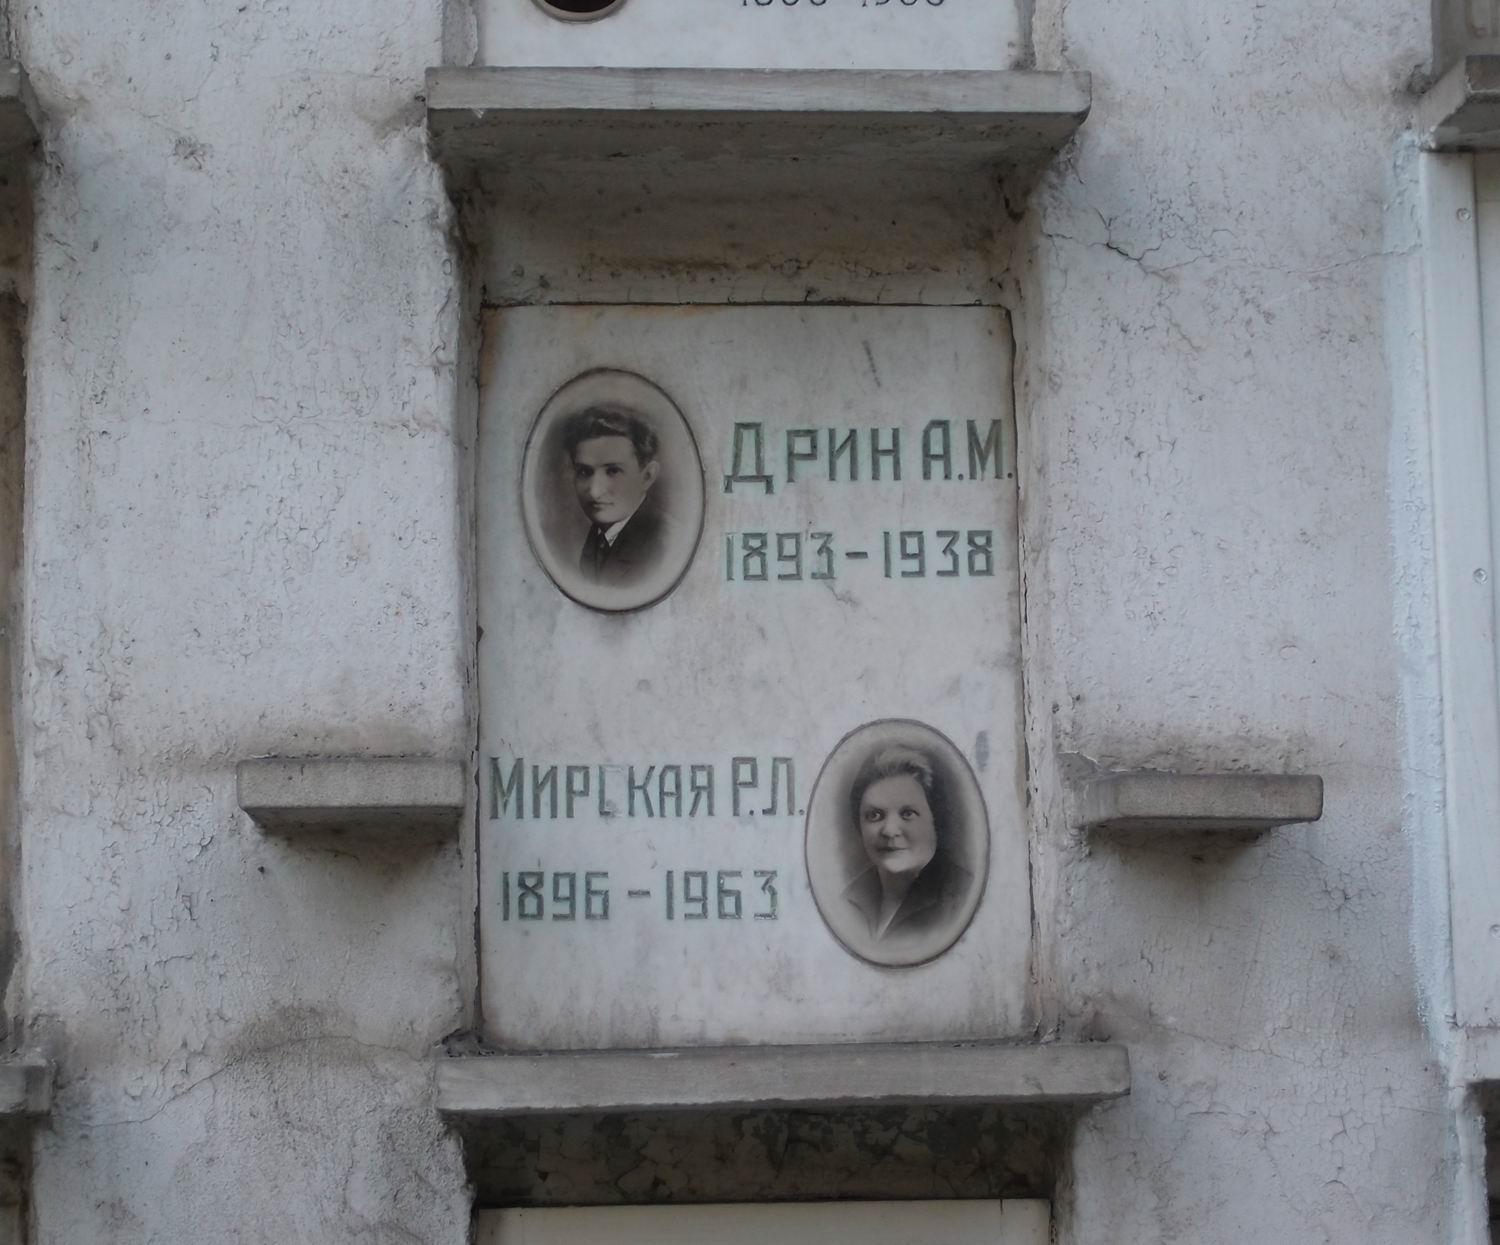 Плита на нише Дрина А.М. (1893-1938), на Новодевичьем кладбище (колумбарий [56]-3-2).